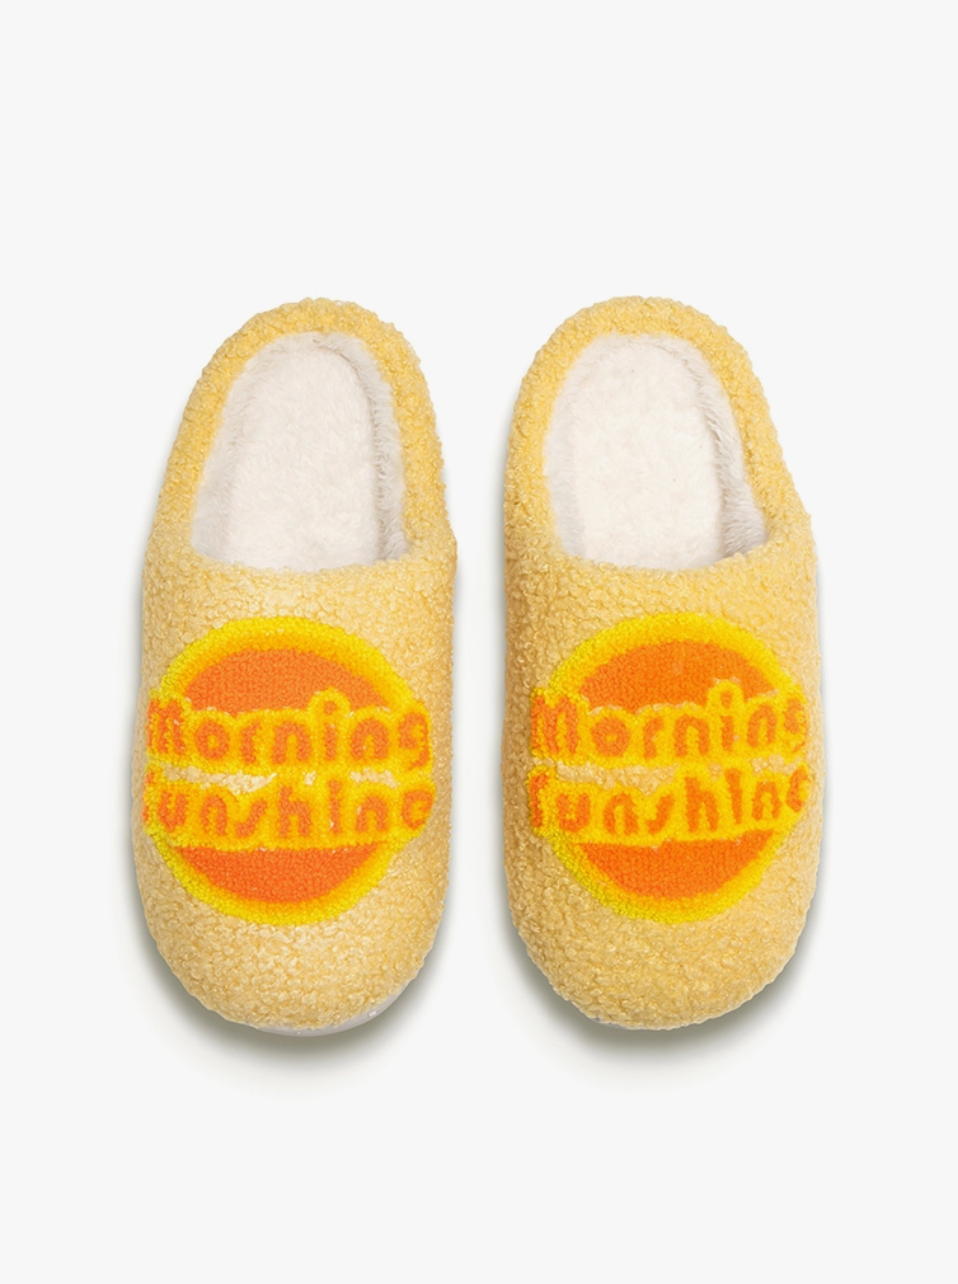 morning sunshine slippers